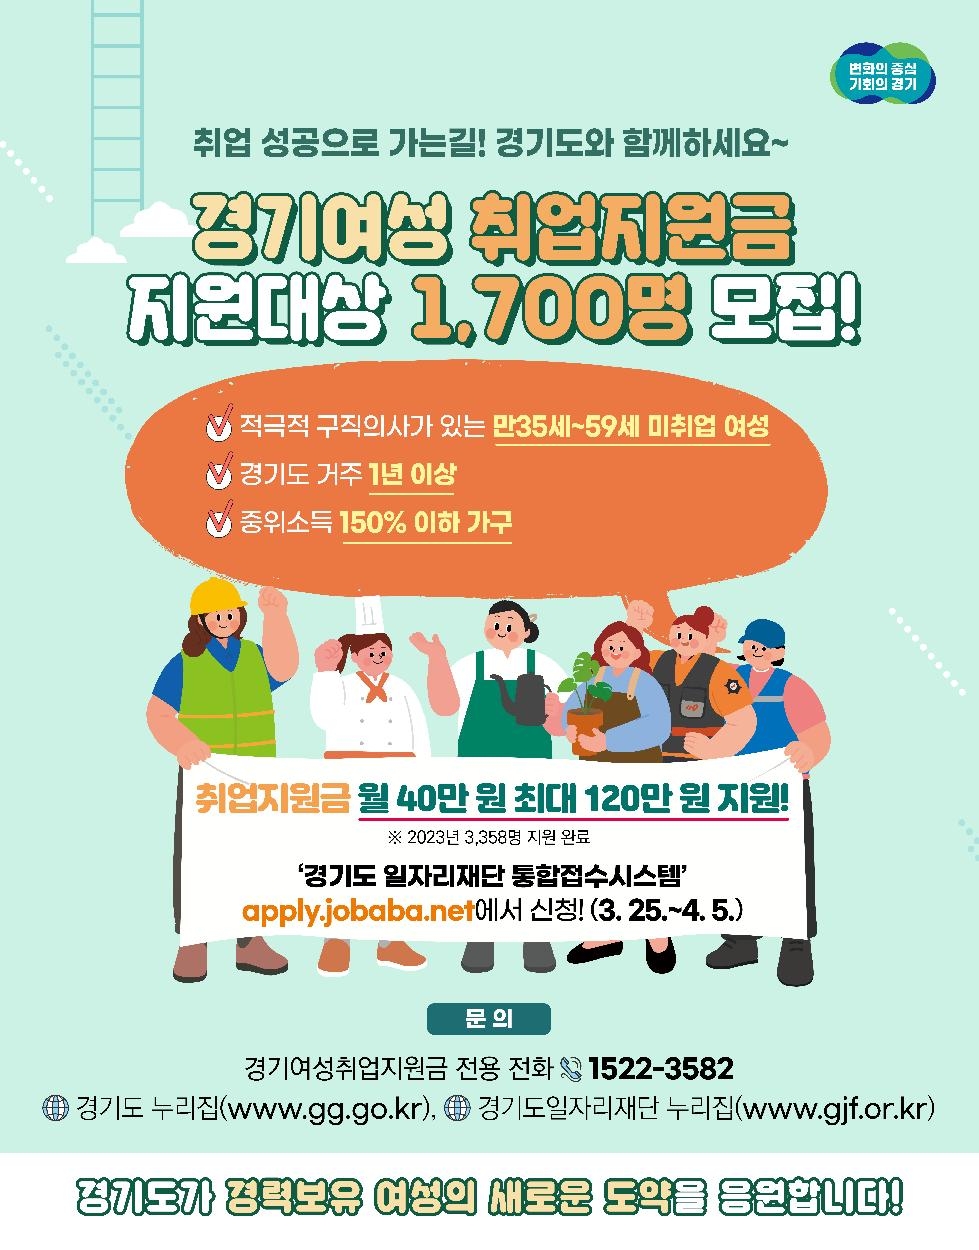 경기도, 경기여성취업지원금 최대 120만 원 지급. 1차 1천700명 모